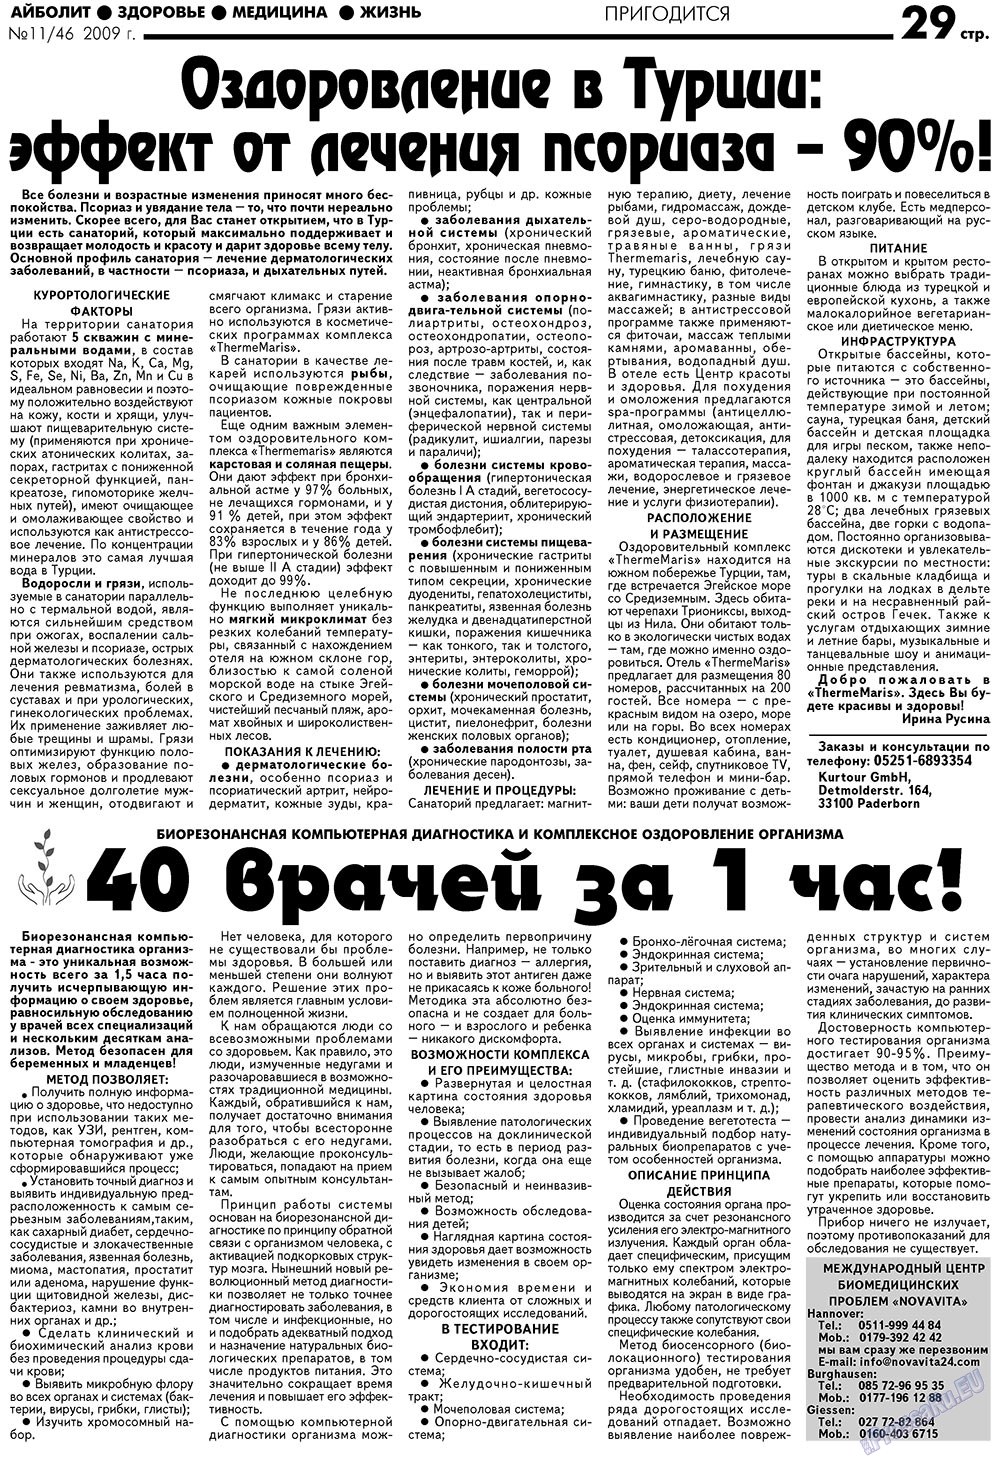 АйБолит, газета. 2009 №11 стр.29